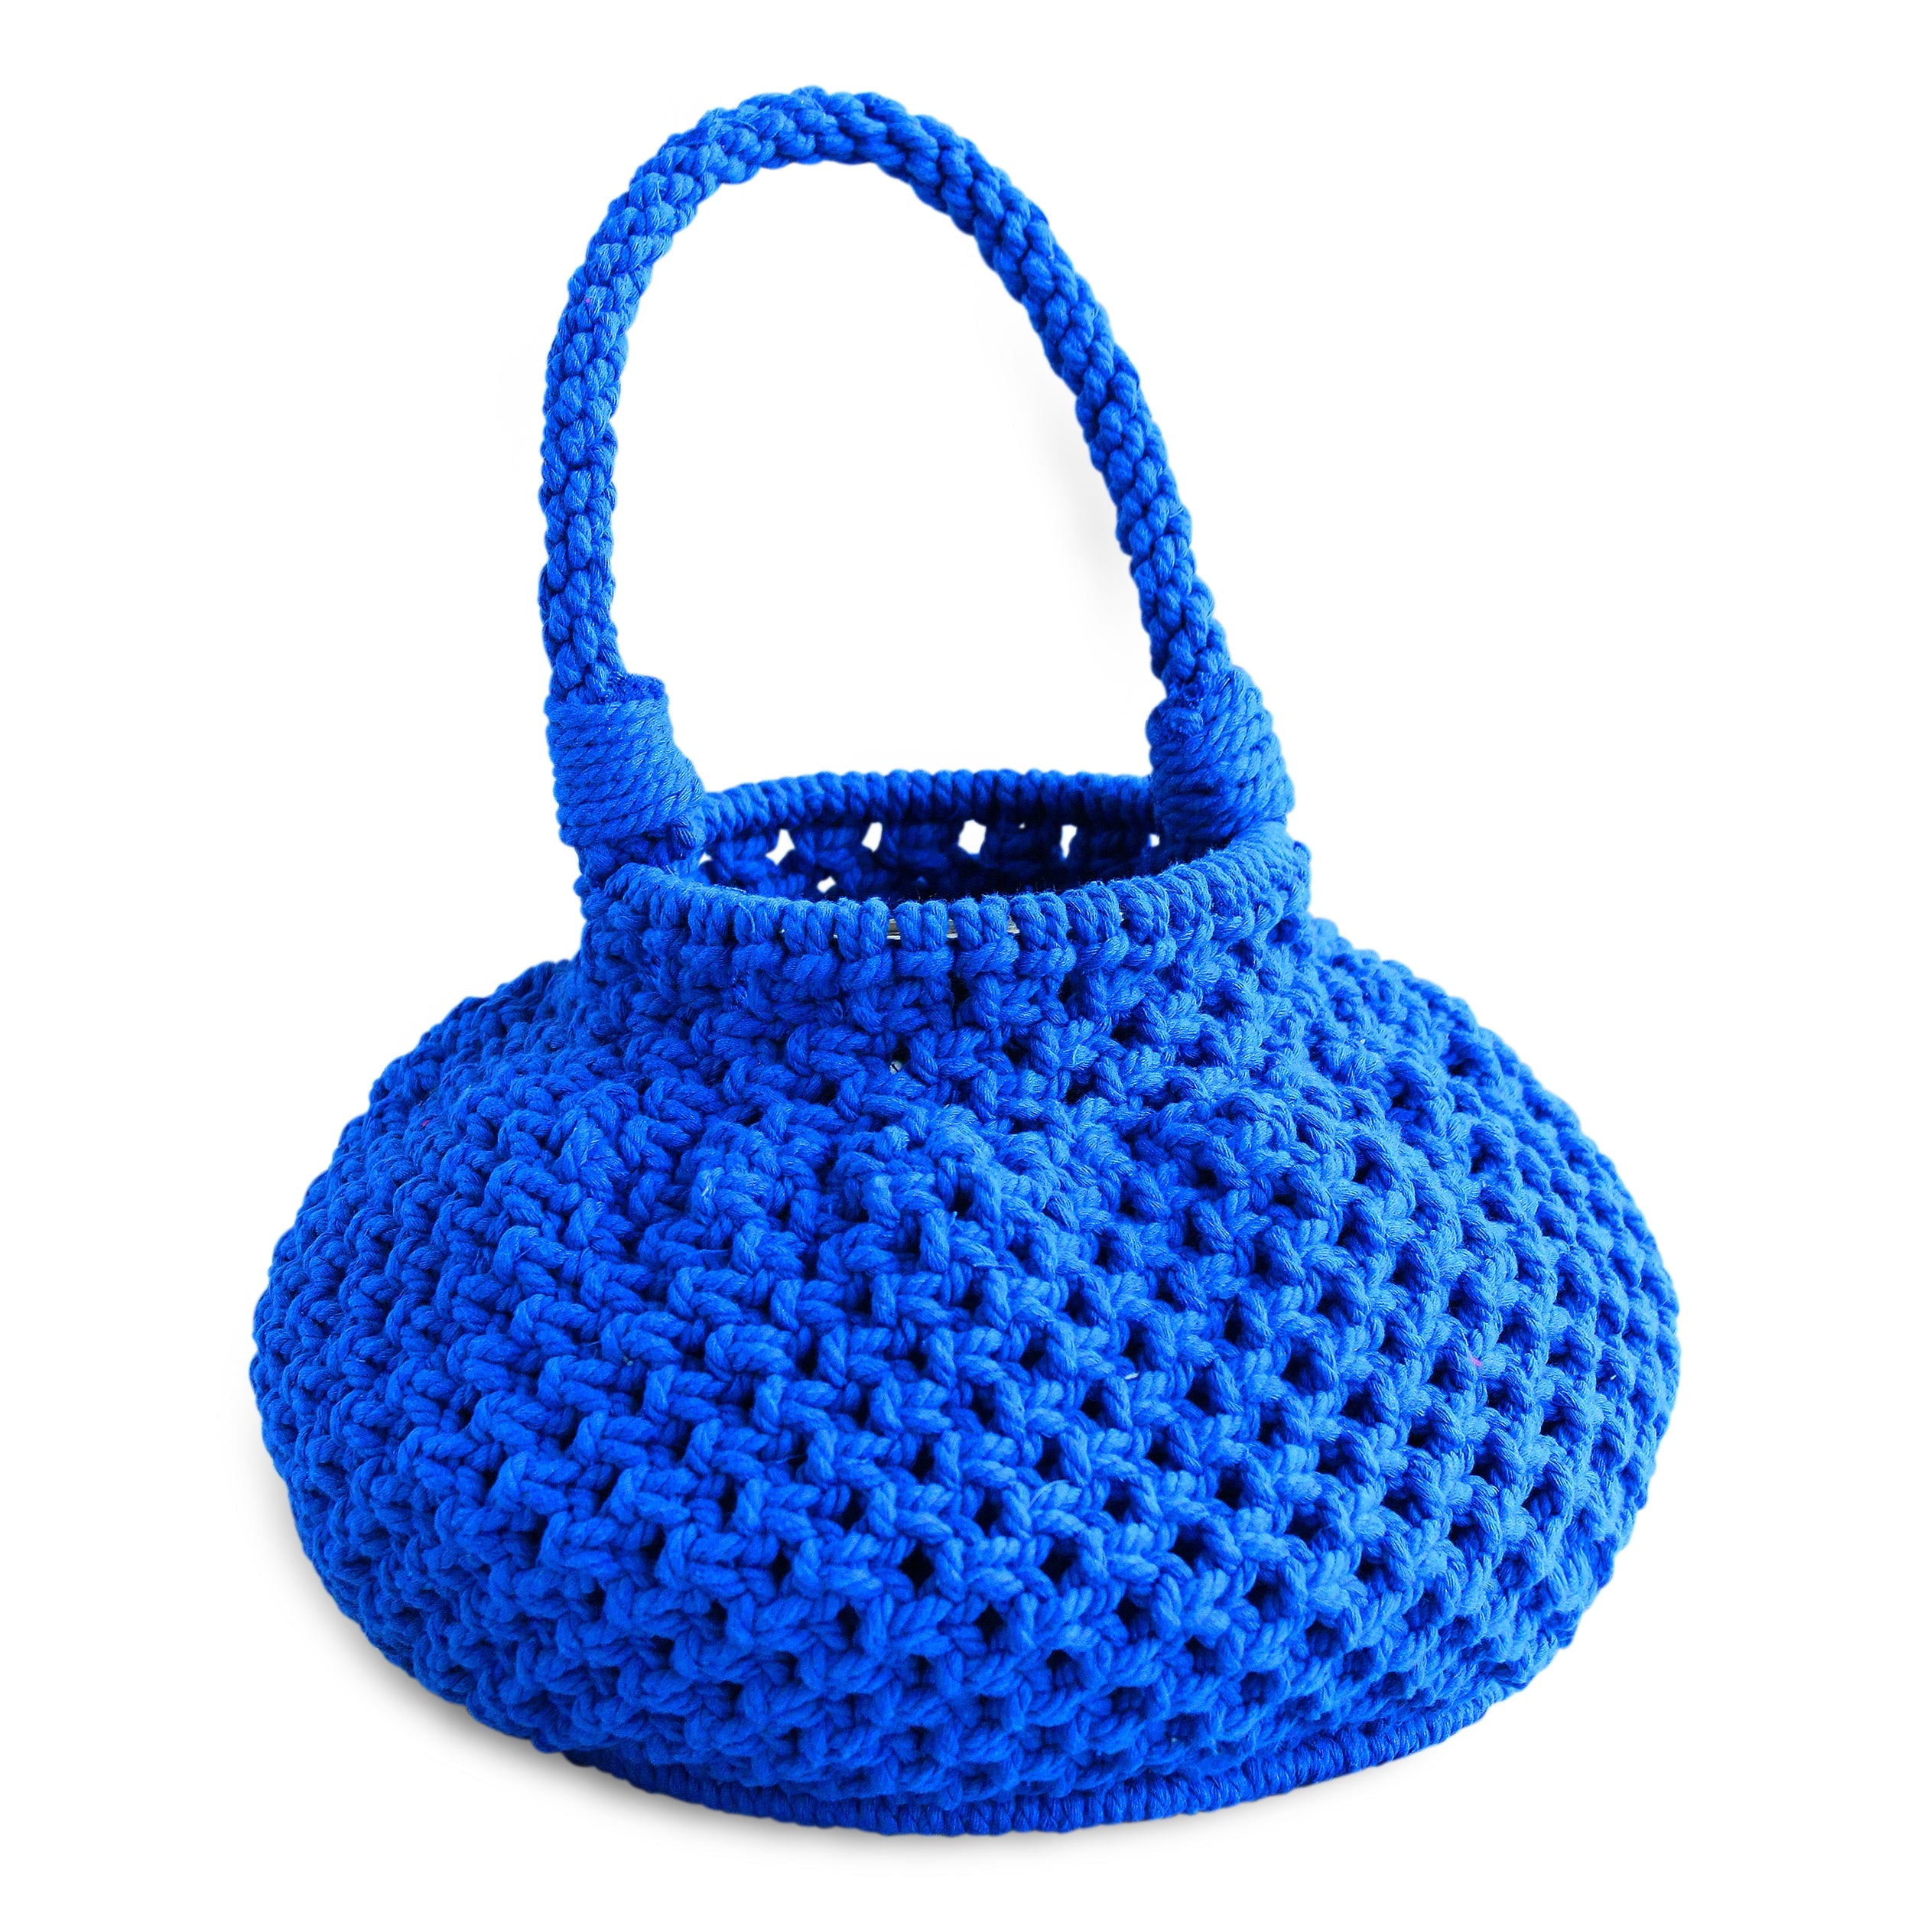 NAGA Macrame Vessel Basket Bag, in Azure Blue